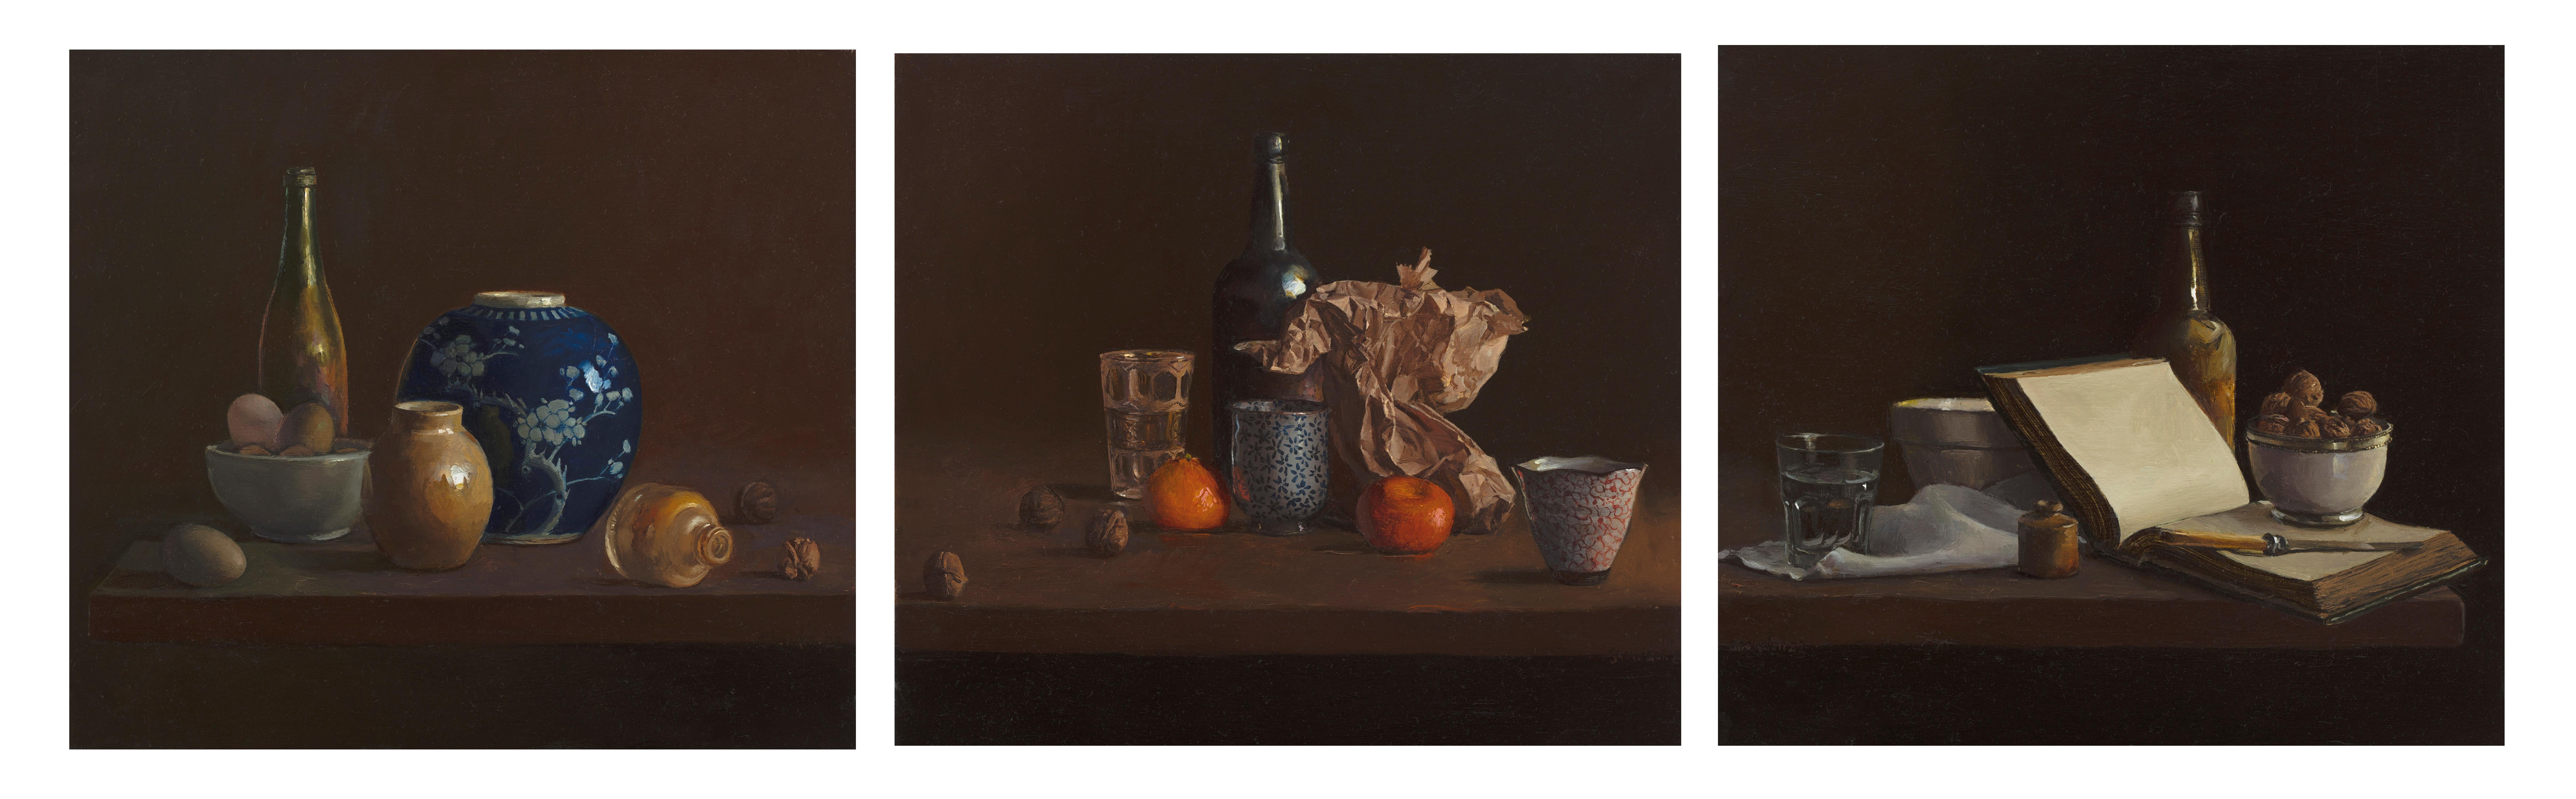 Triptyque de trois bouteilles, nature morte, scène de banquet, peinture à l'huile de Tim Snowdon